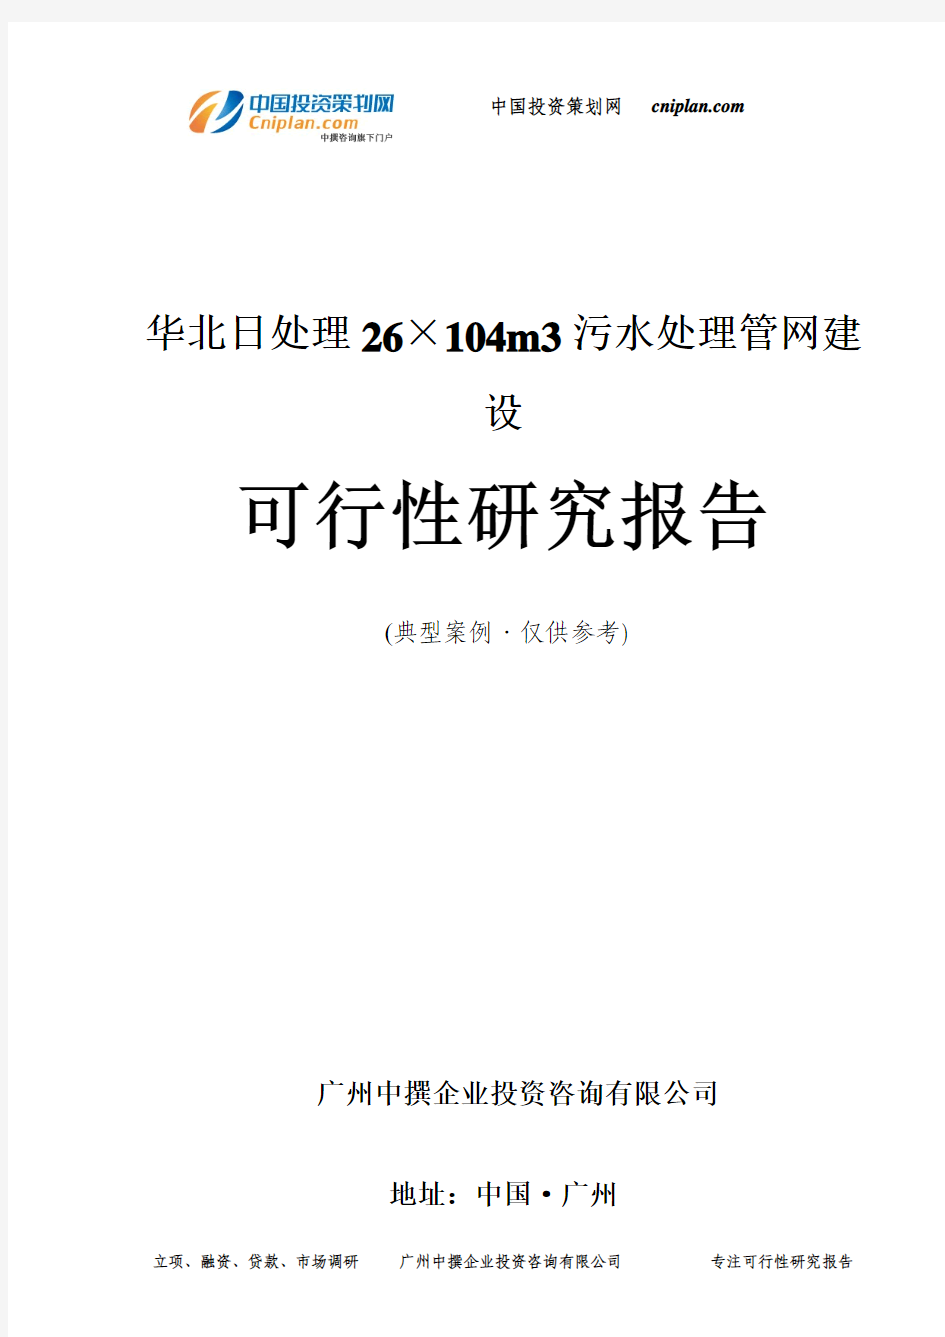 华北日处理26×104m3污水处理管网建设可行性研究报告-广州中撰咨询